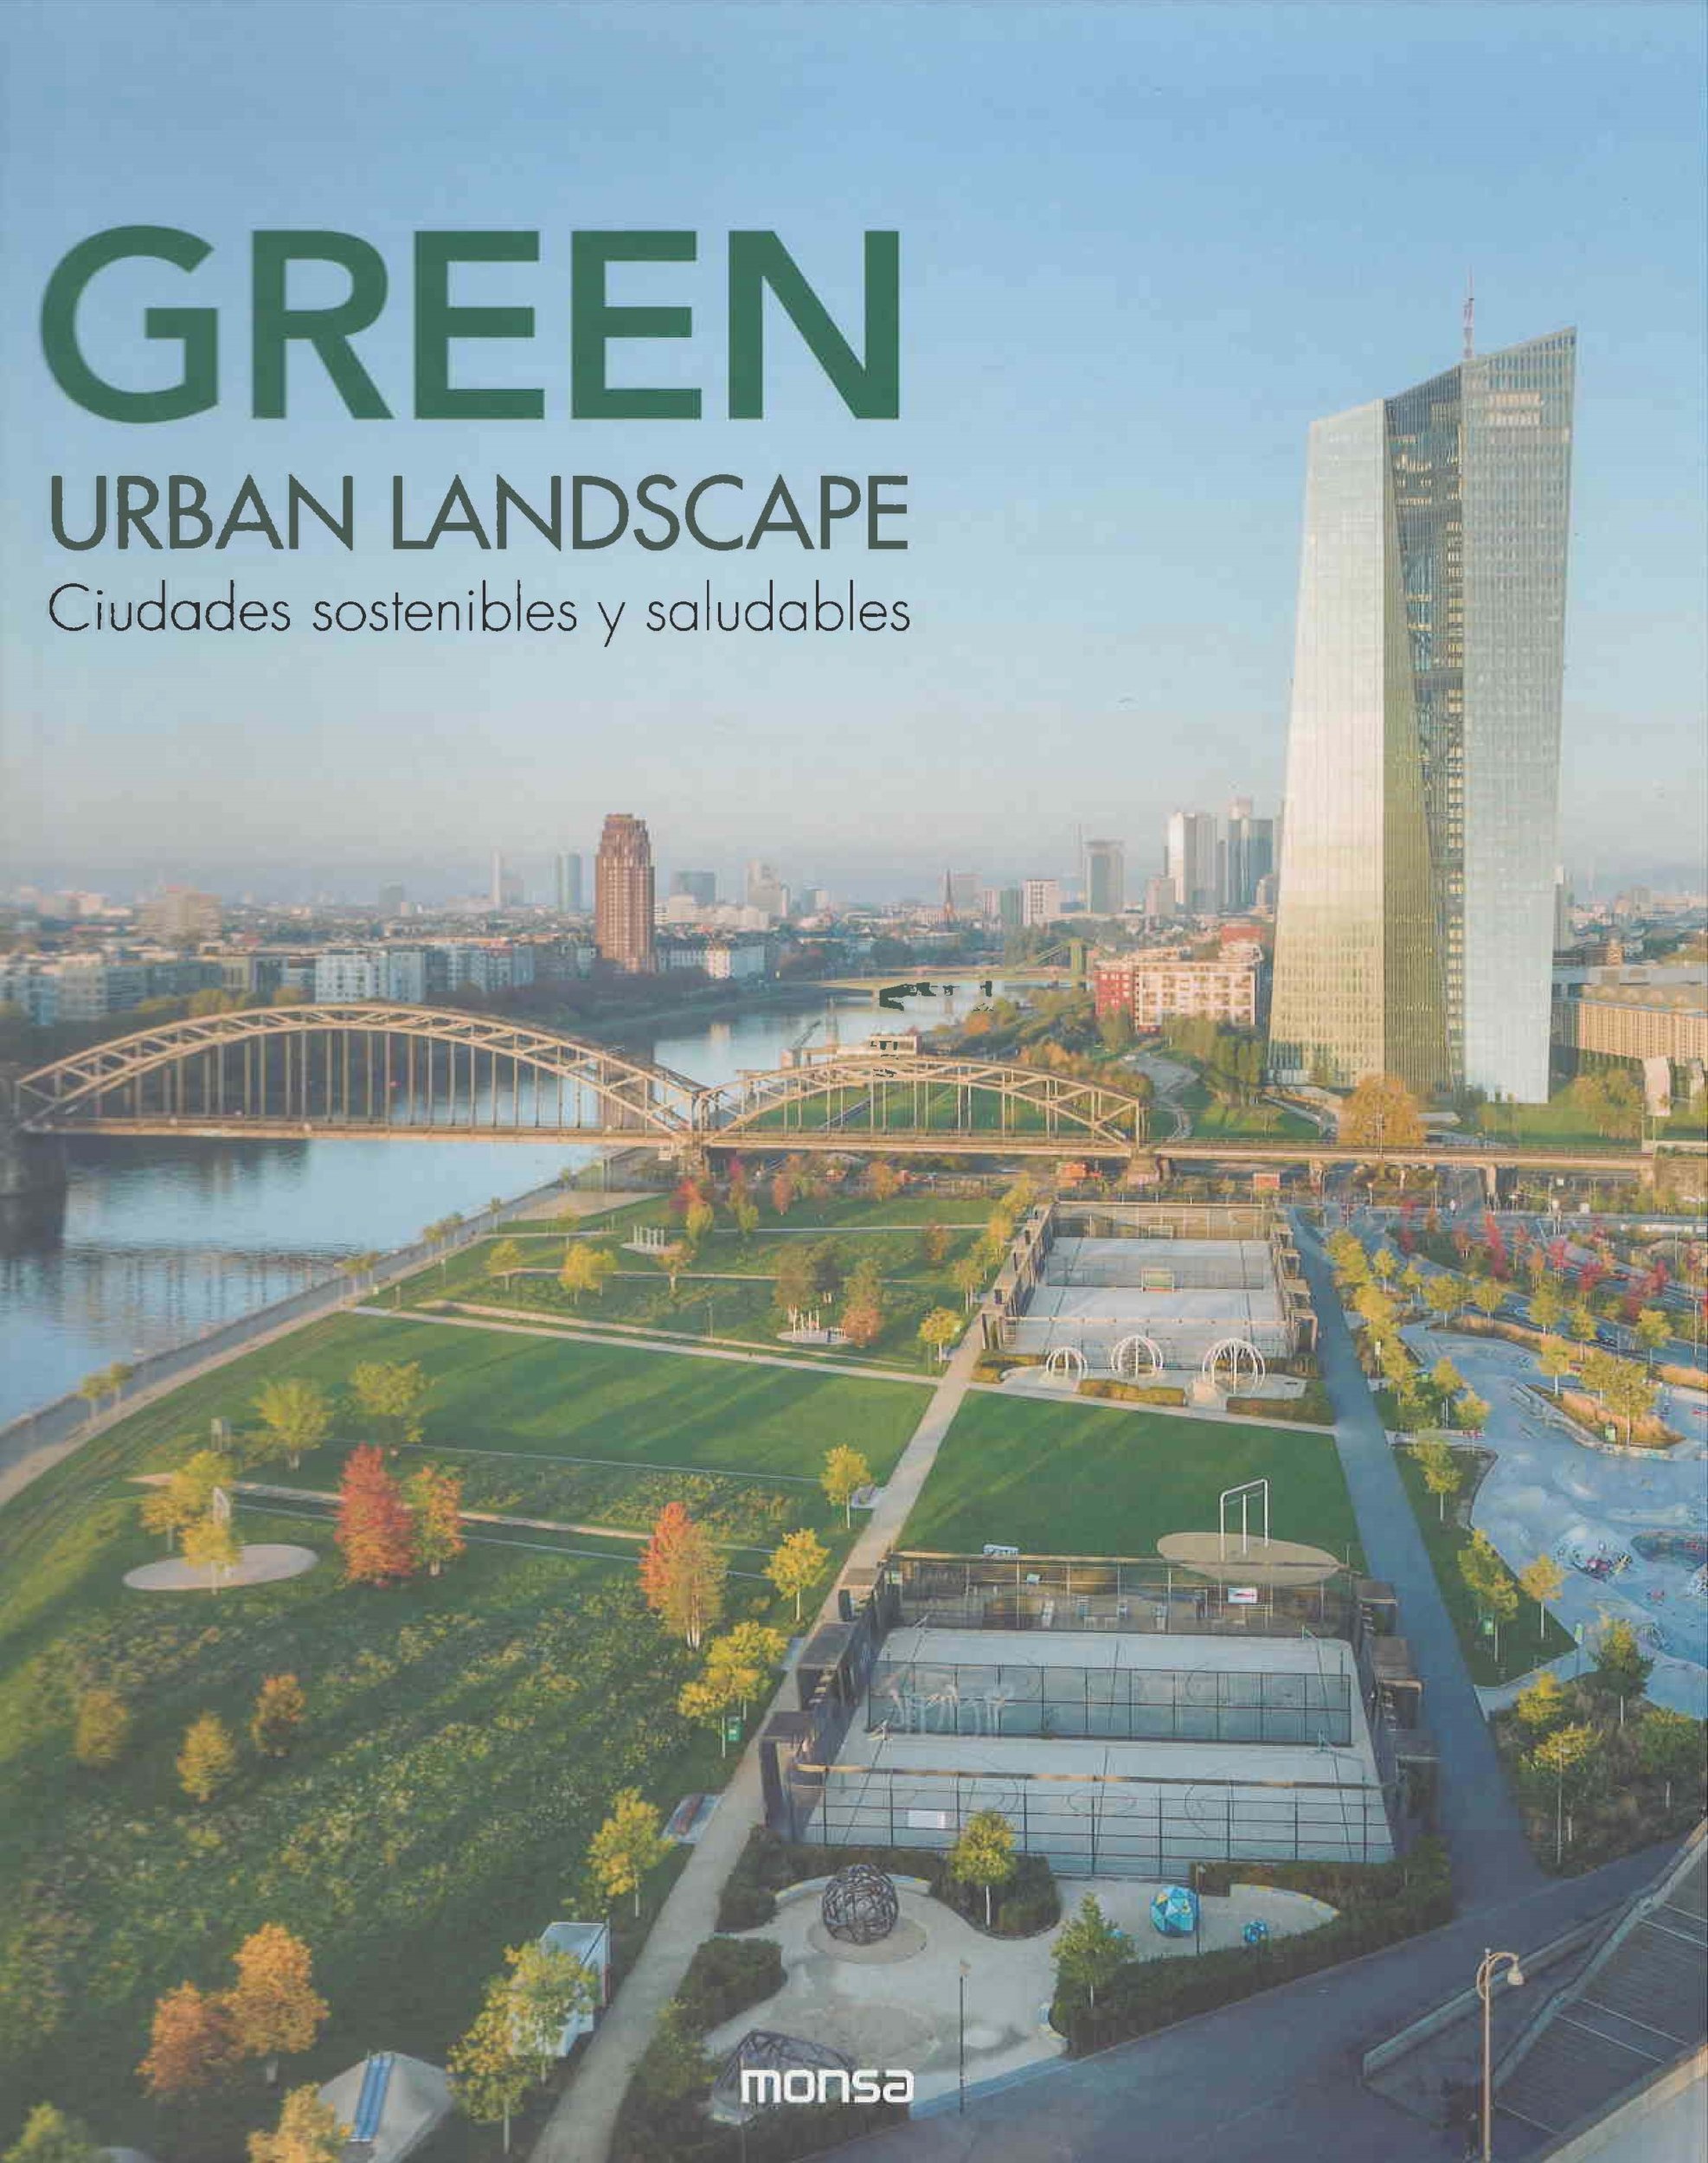 Green urban landscape : ciudades sostenibles y saludables